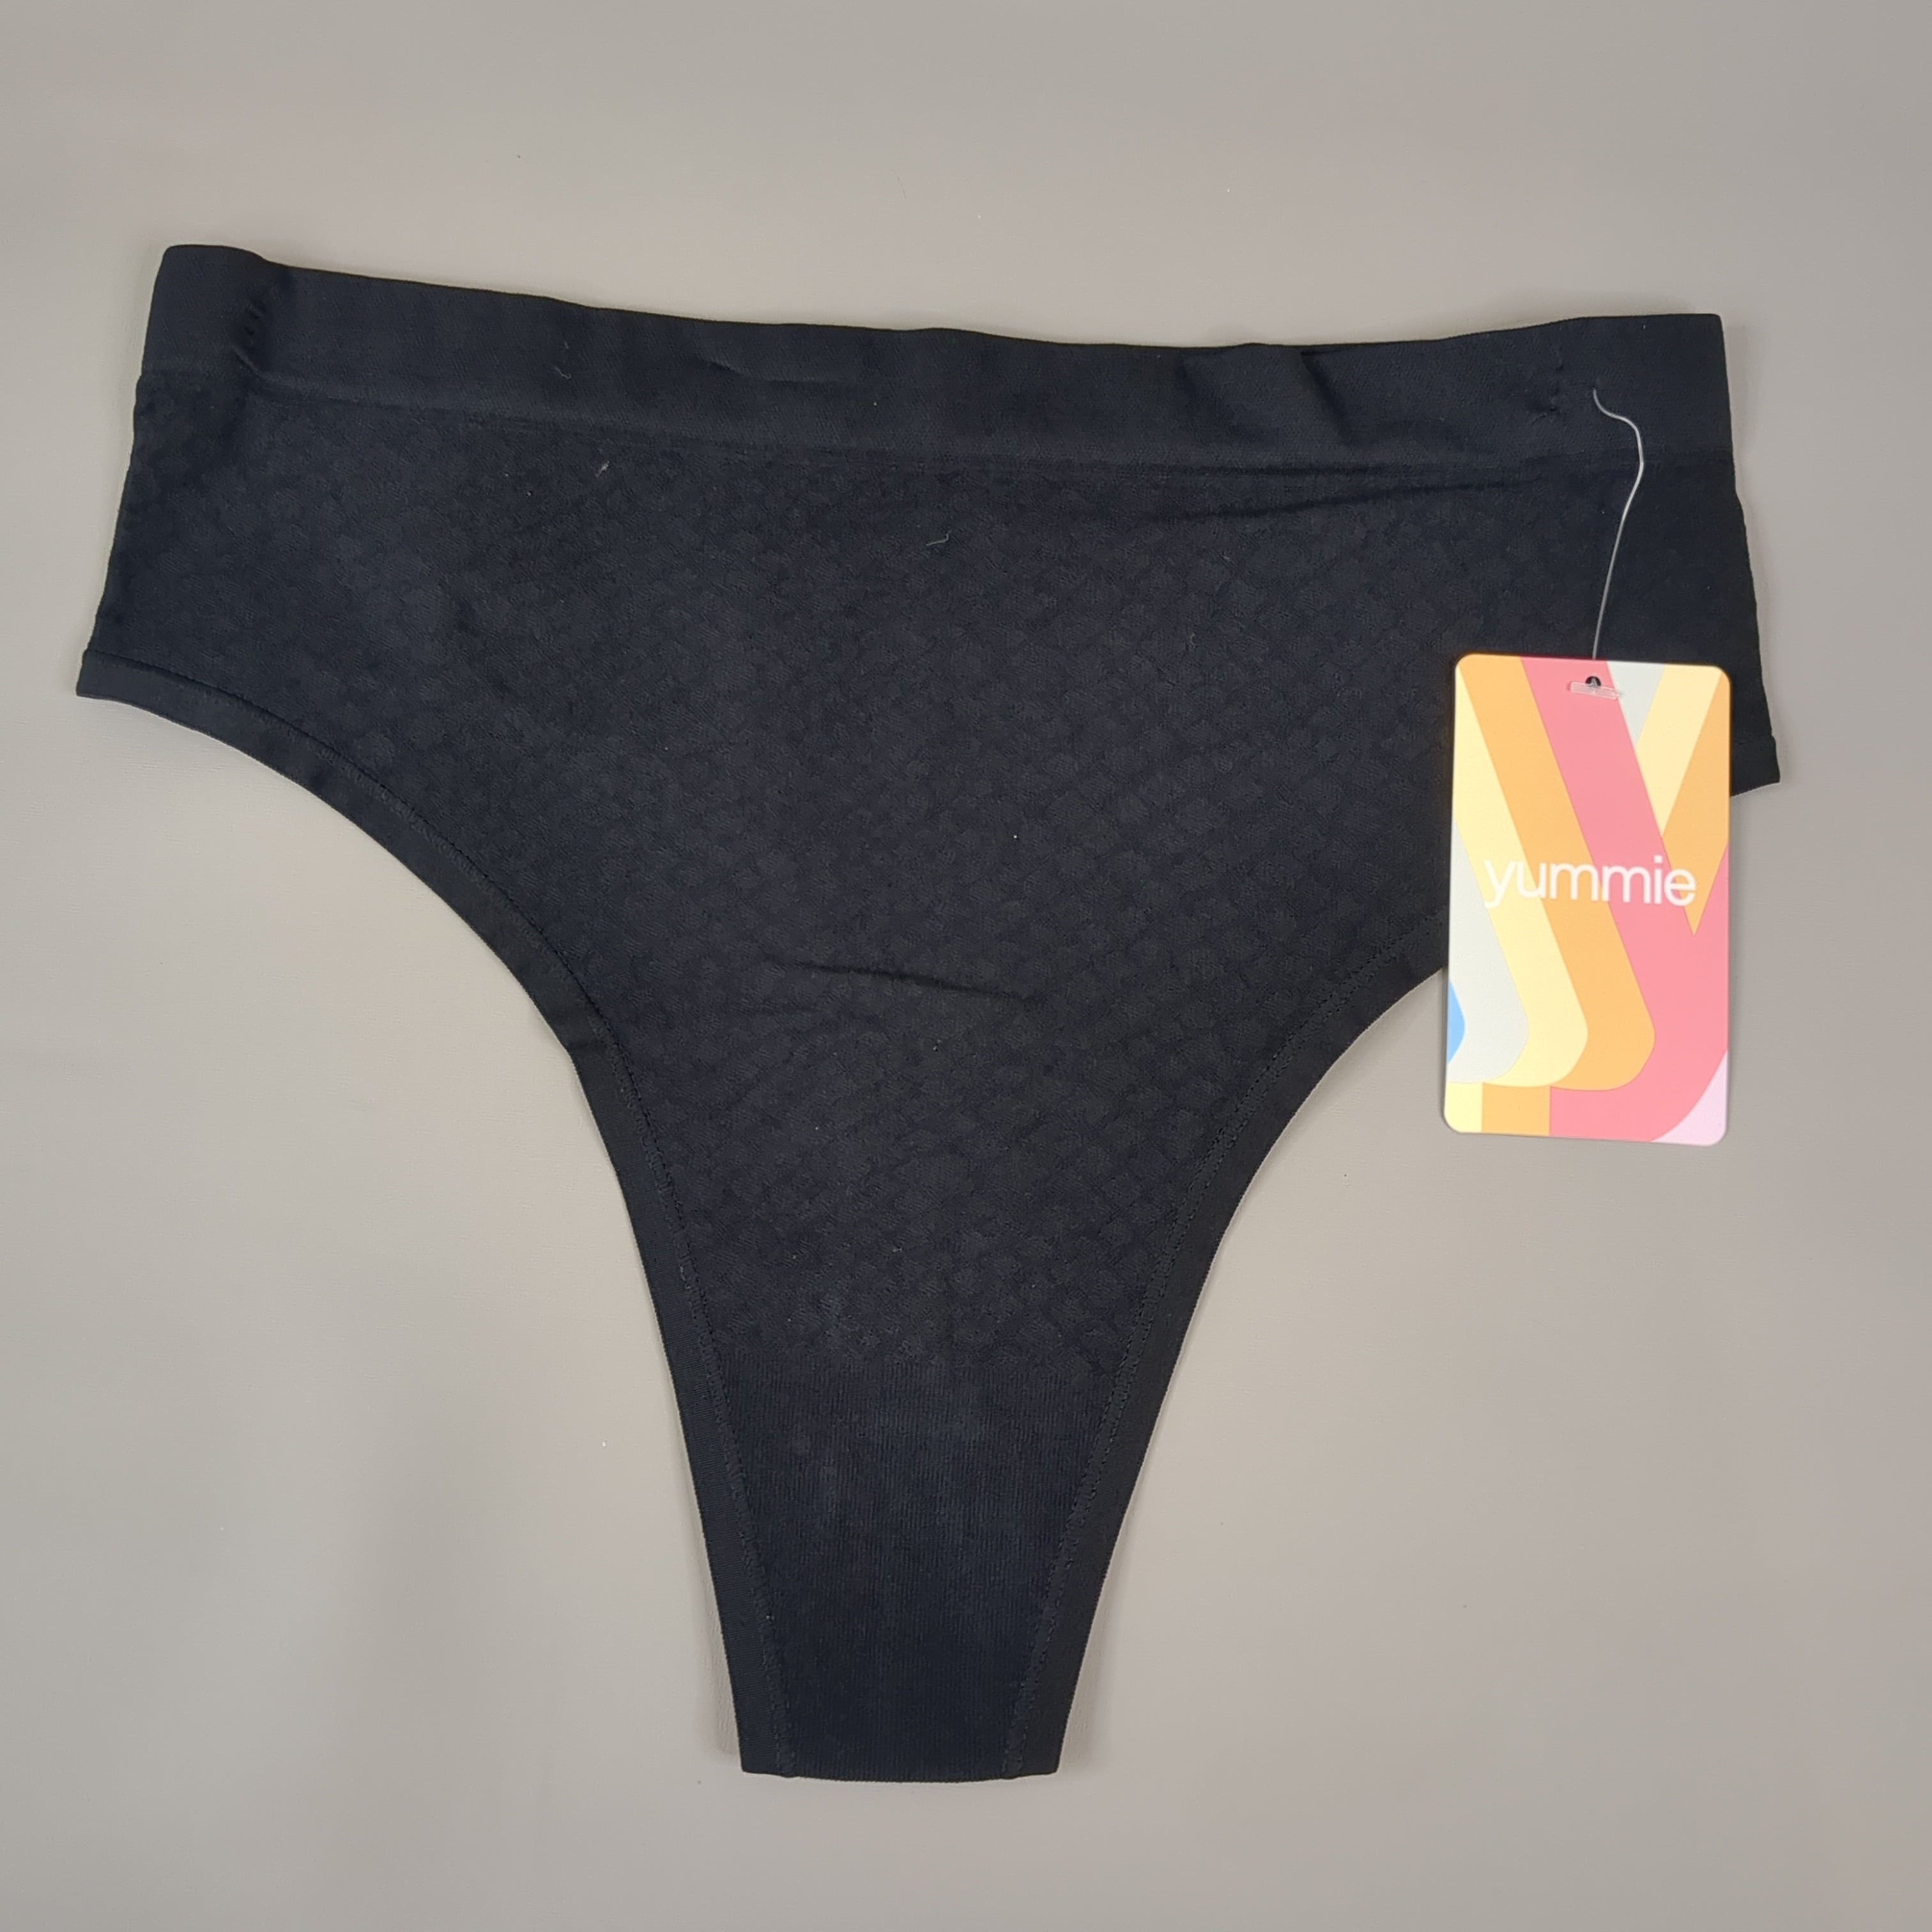 YUMMIE Amber Mid Waist Thong Women's Underwear Sz S/M Black YT5-296 (New) -  Conseil scolaire francophone de Terre-Neuve et Labrador